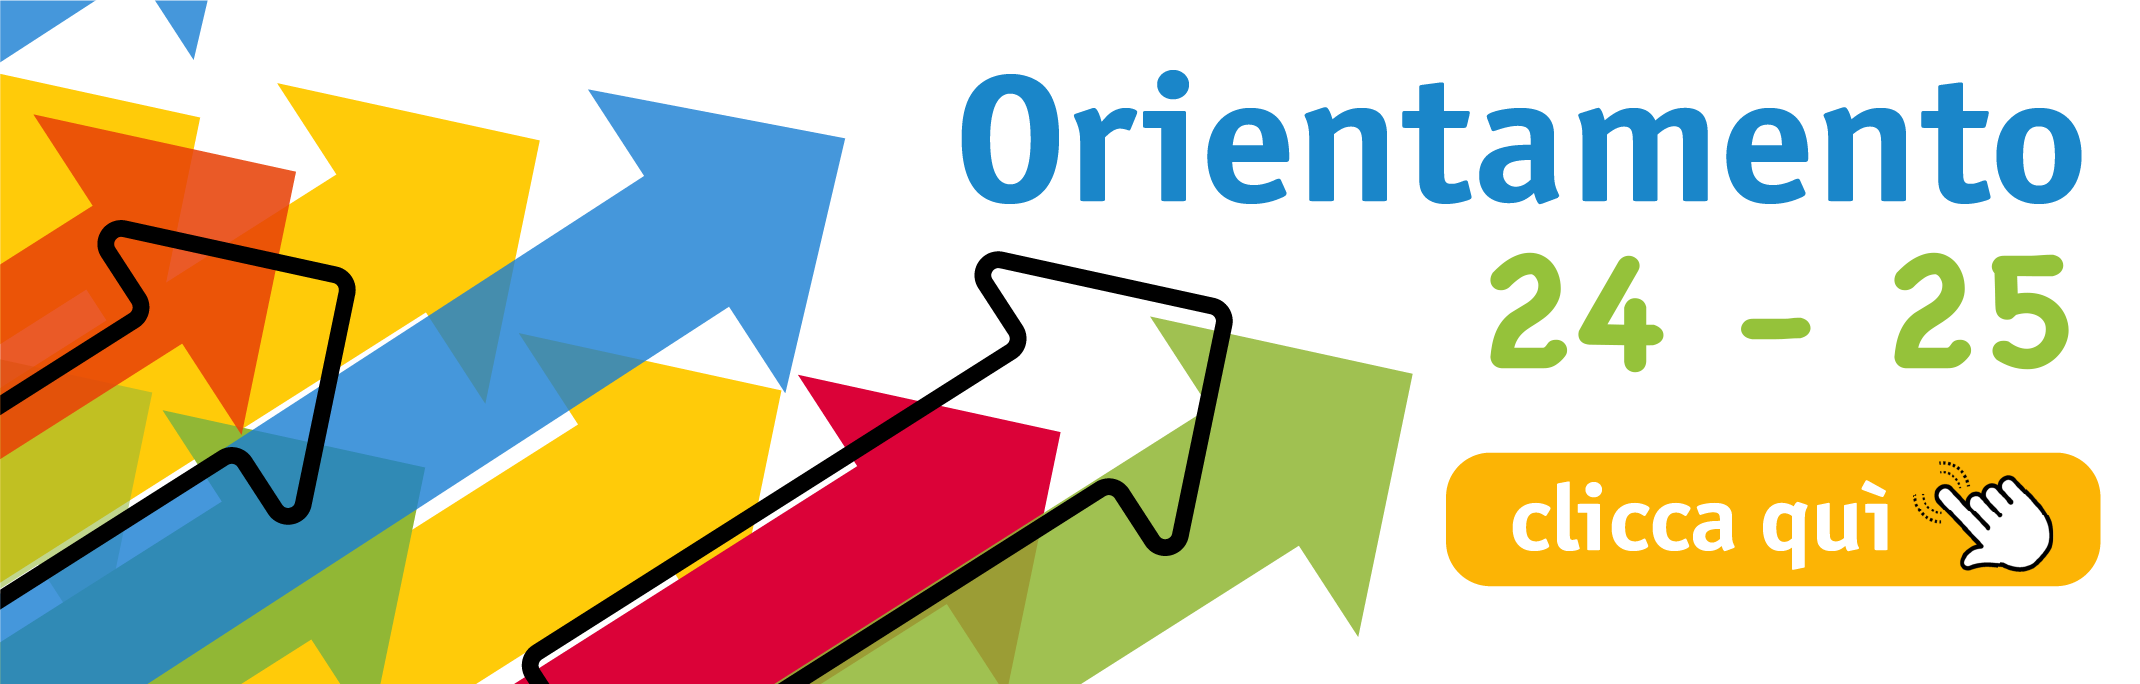 orienta4